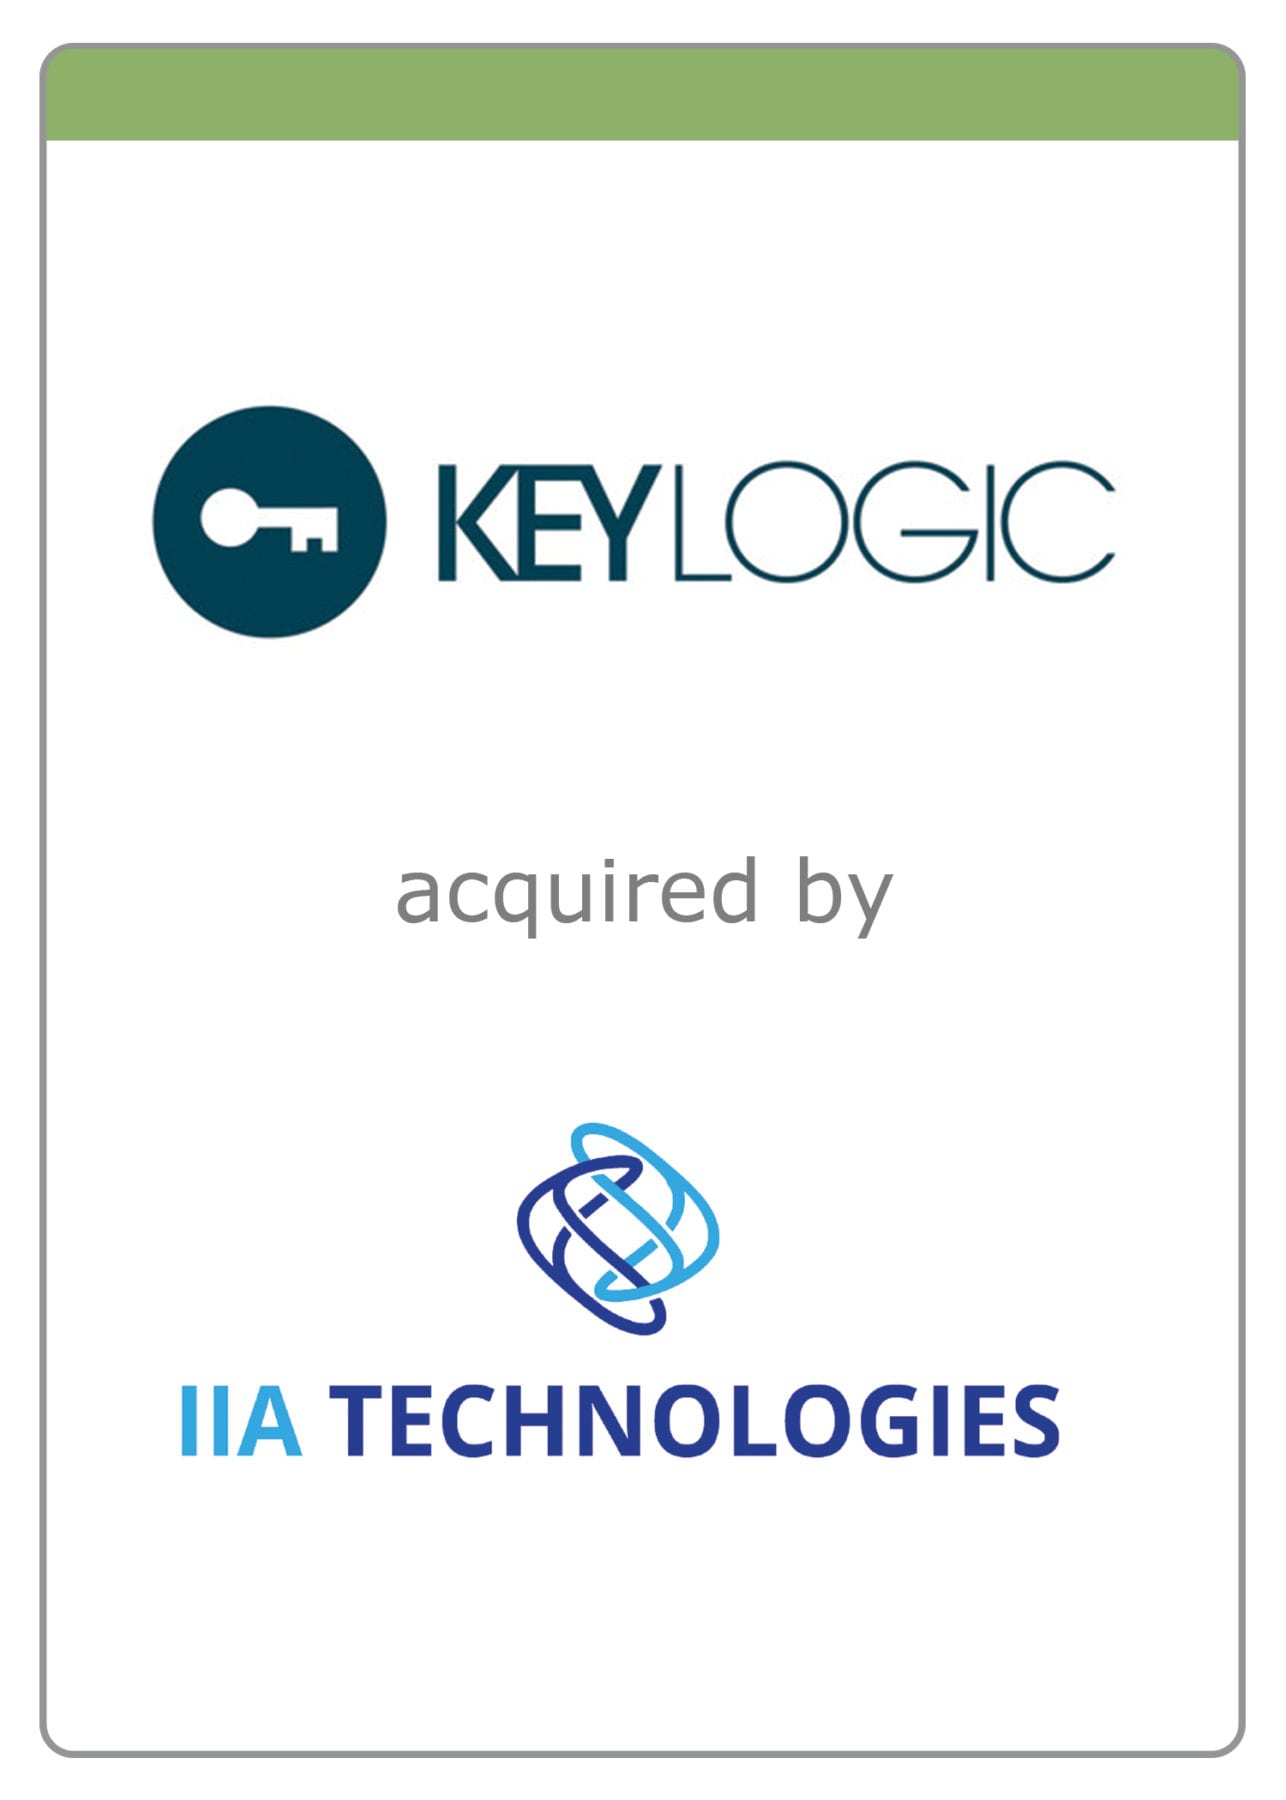 KeyLogic on Its Sale to IIA Technologies Corp